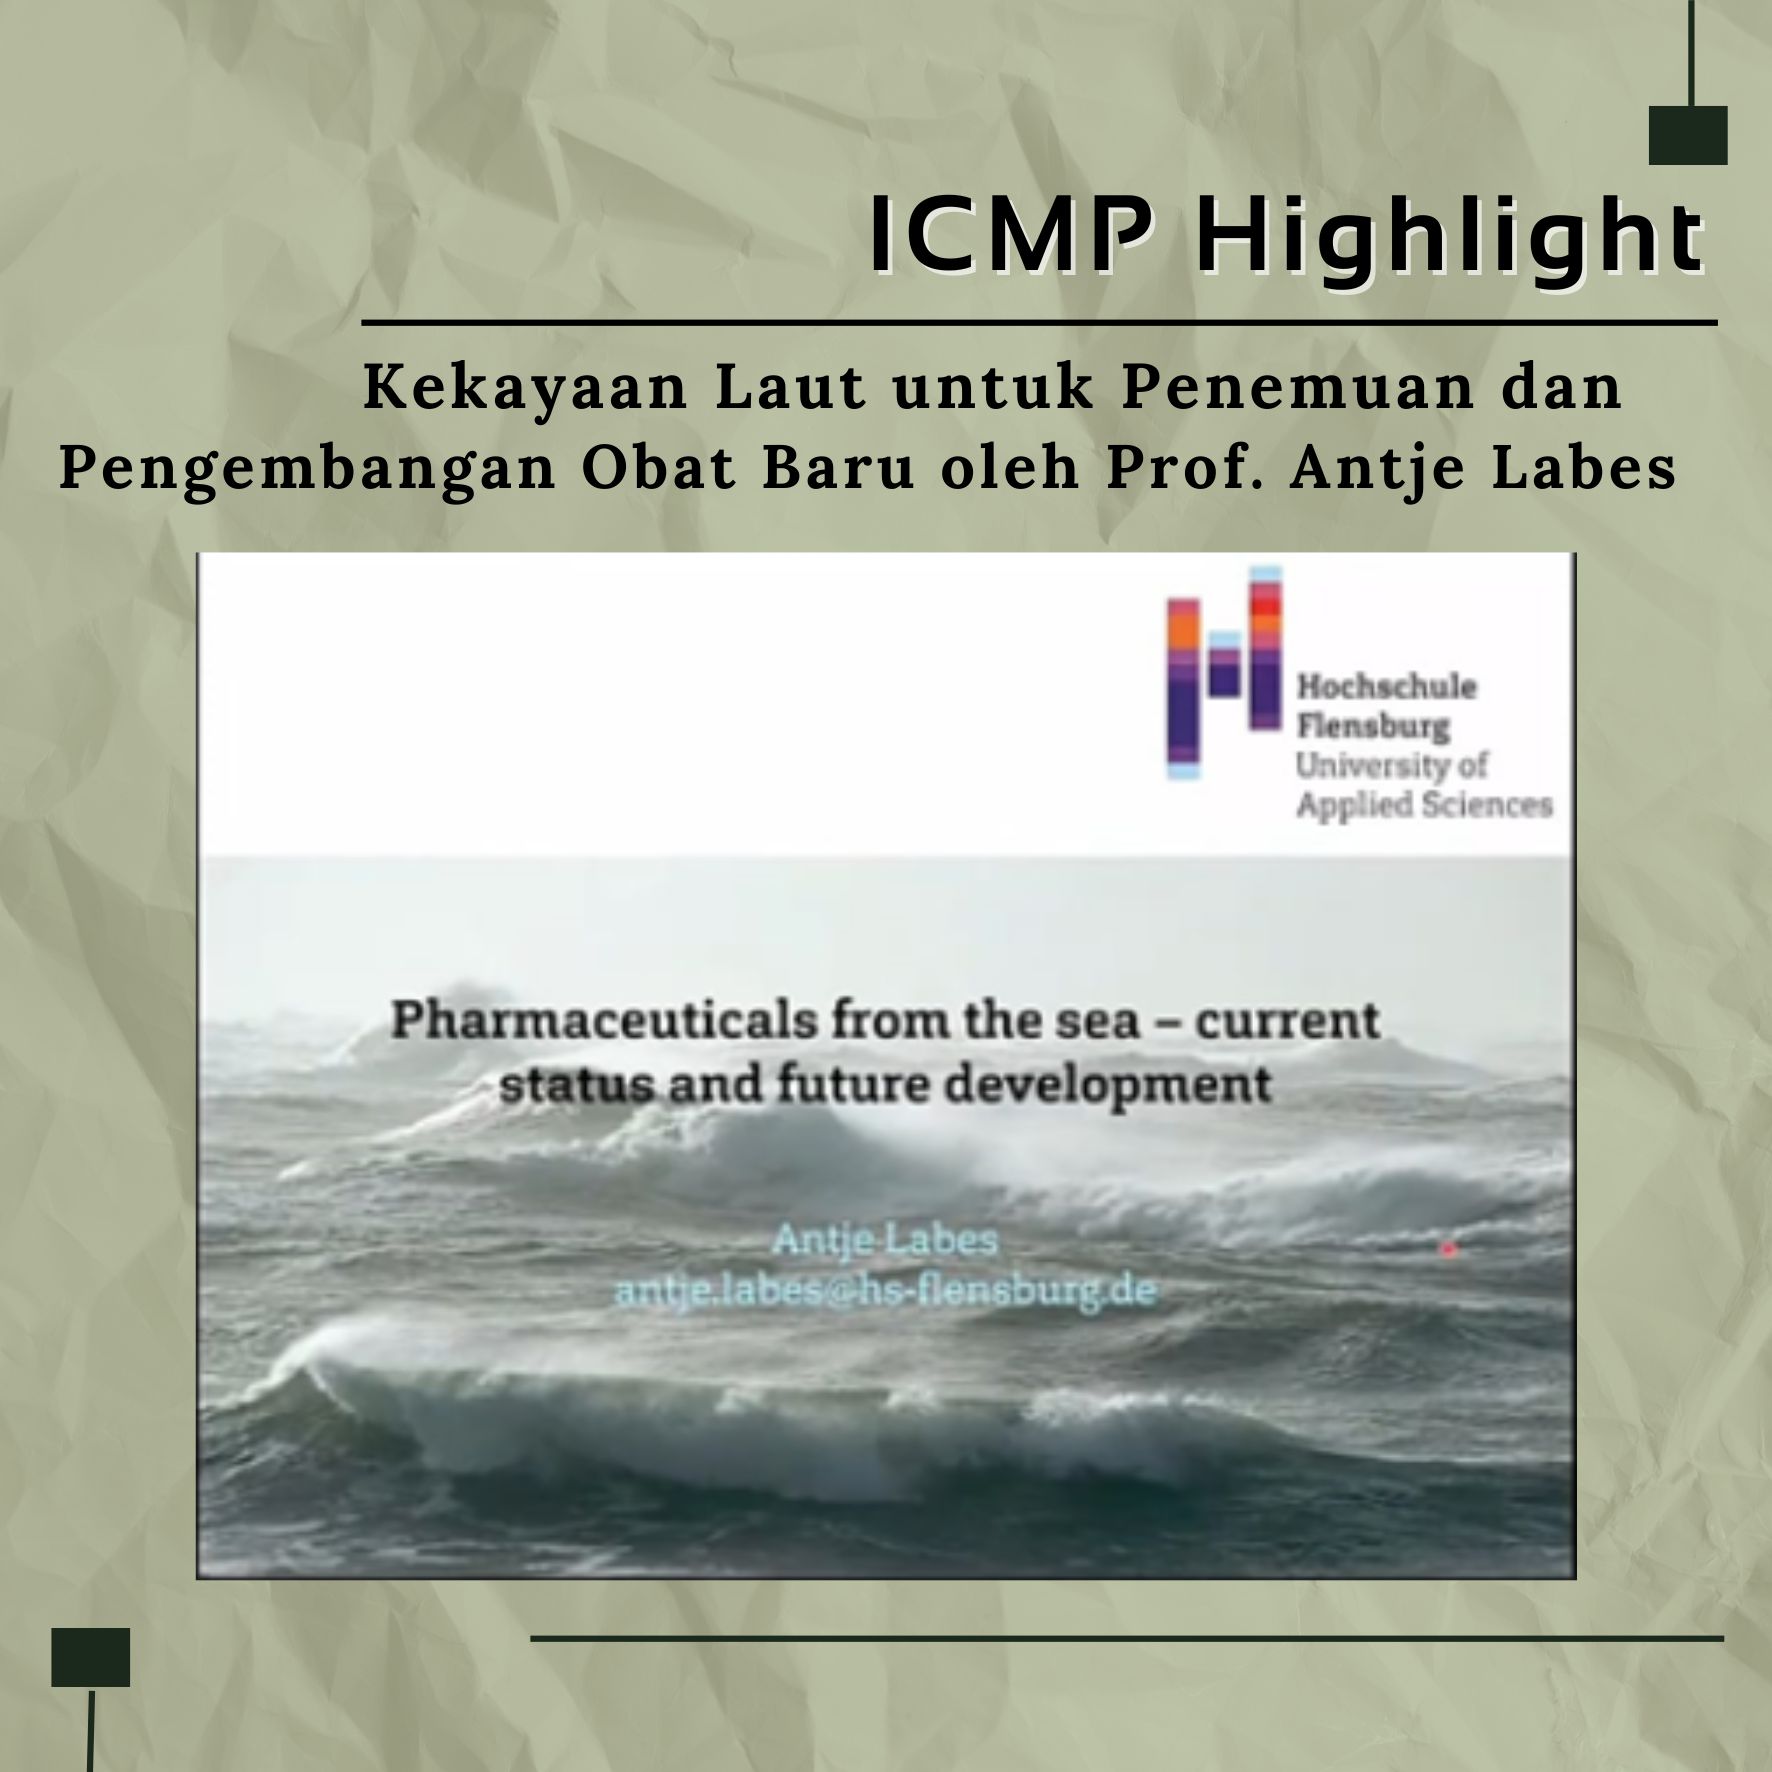 ICMP Highlight: Kekayaan Laut untuk Penemuan dan Pengembangan Obat Baru oleh Prof. Antje Labes